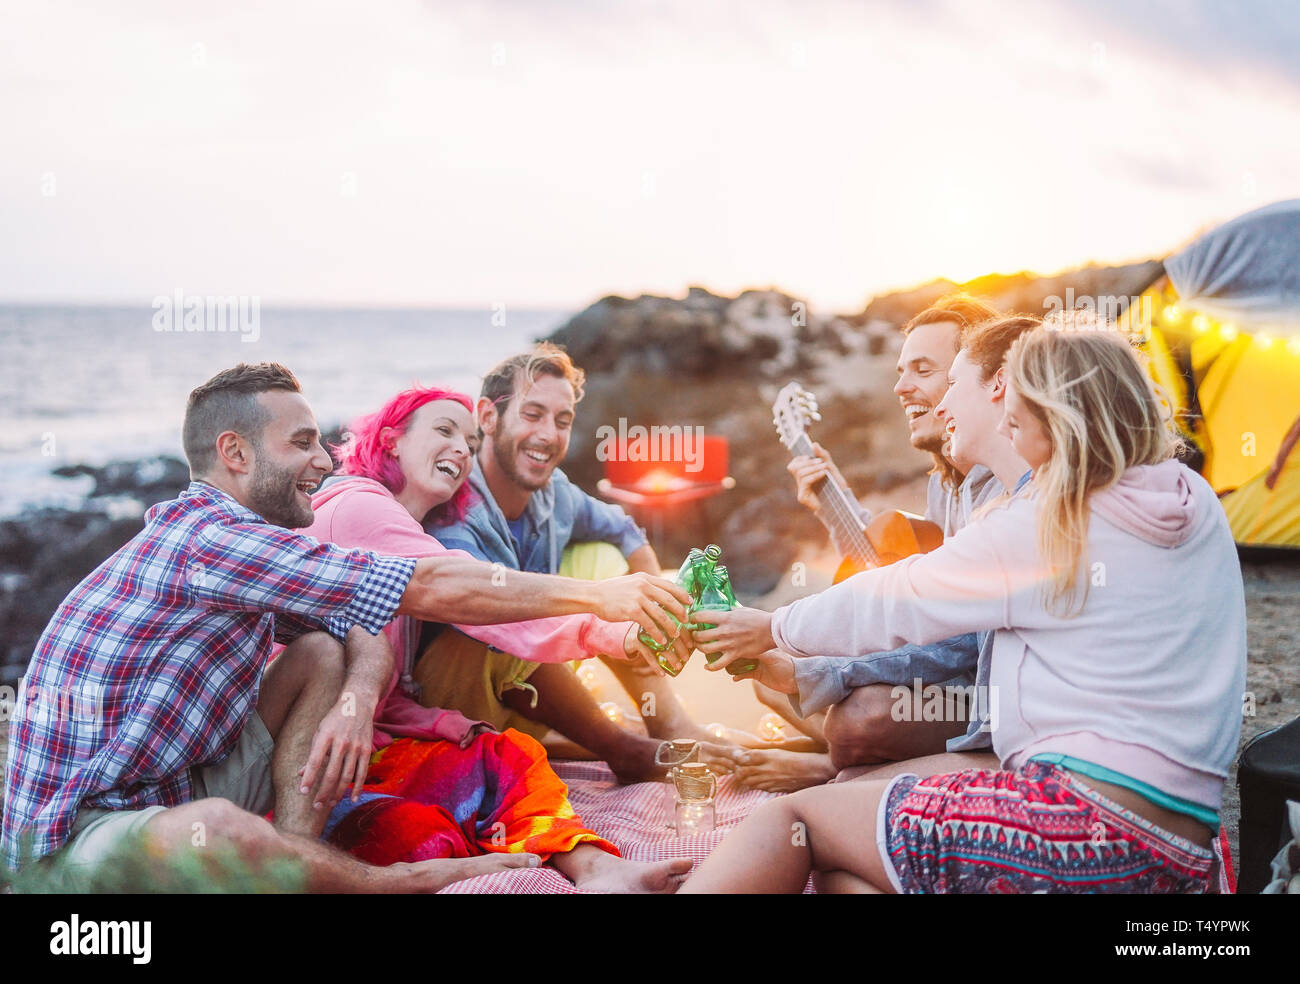 Gruppe von Freunden zujubeln mit Bier im Freien - Happy people Camping mit Zelt und Grill Spaß toasten Flaschen Bier Stockfoto